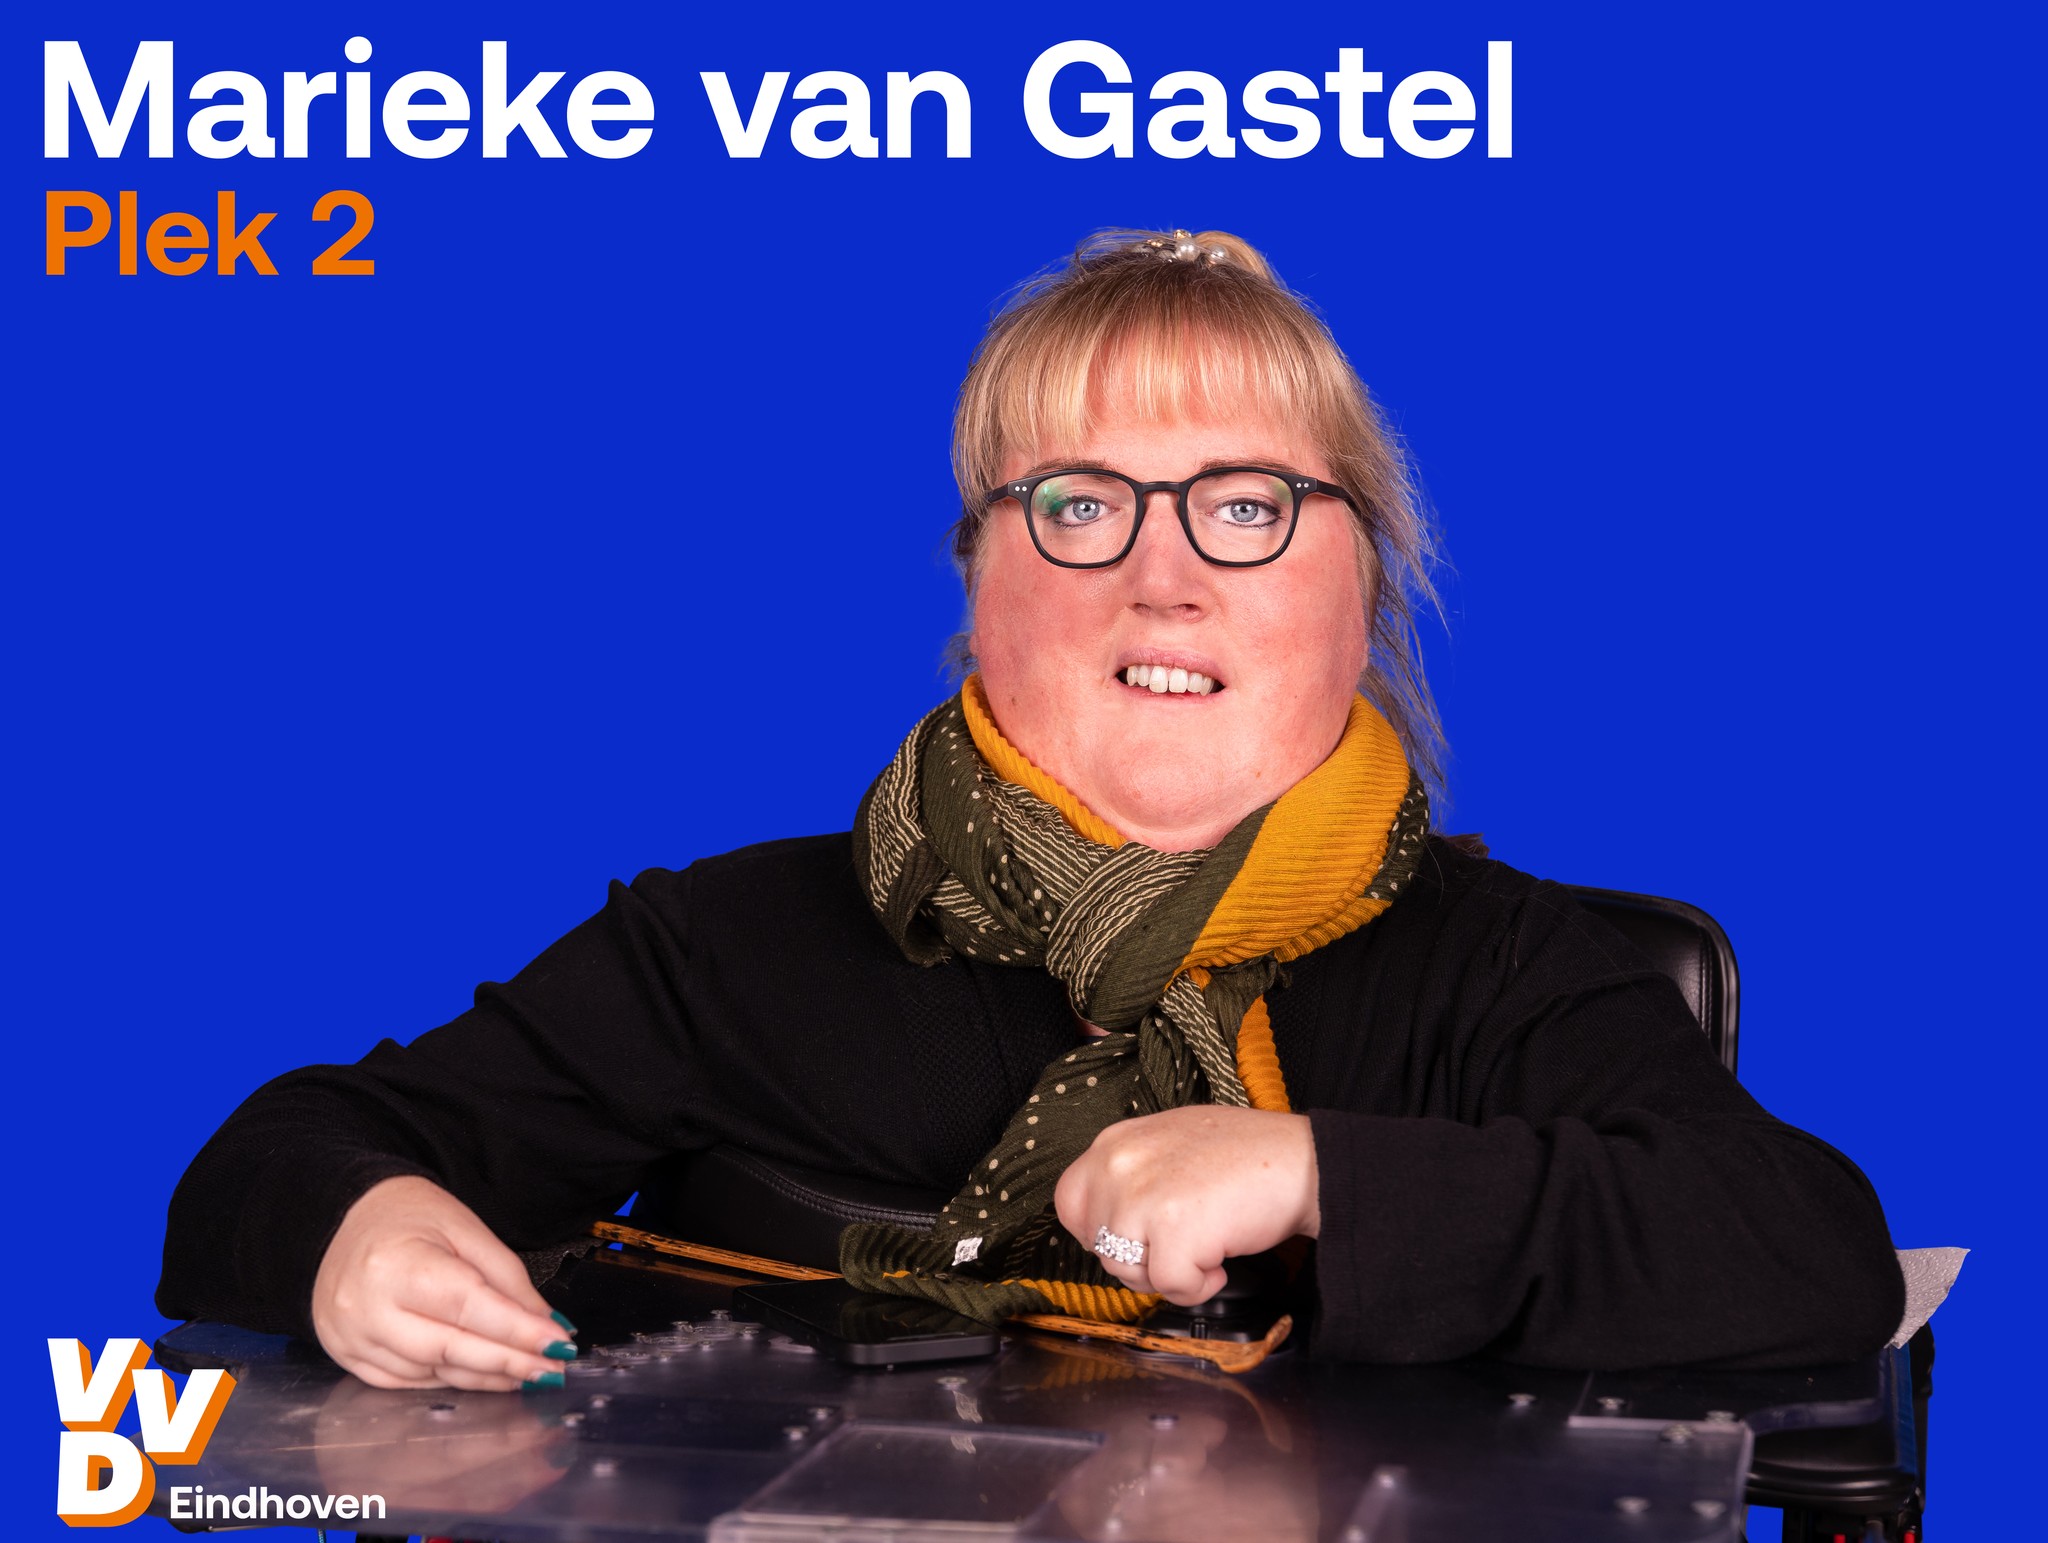 Marieke van Gastel